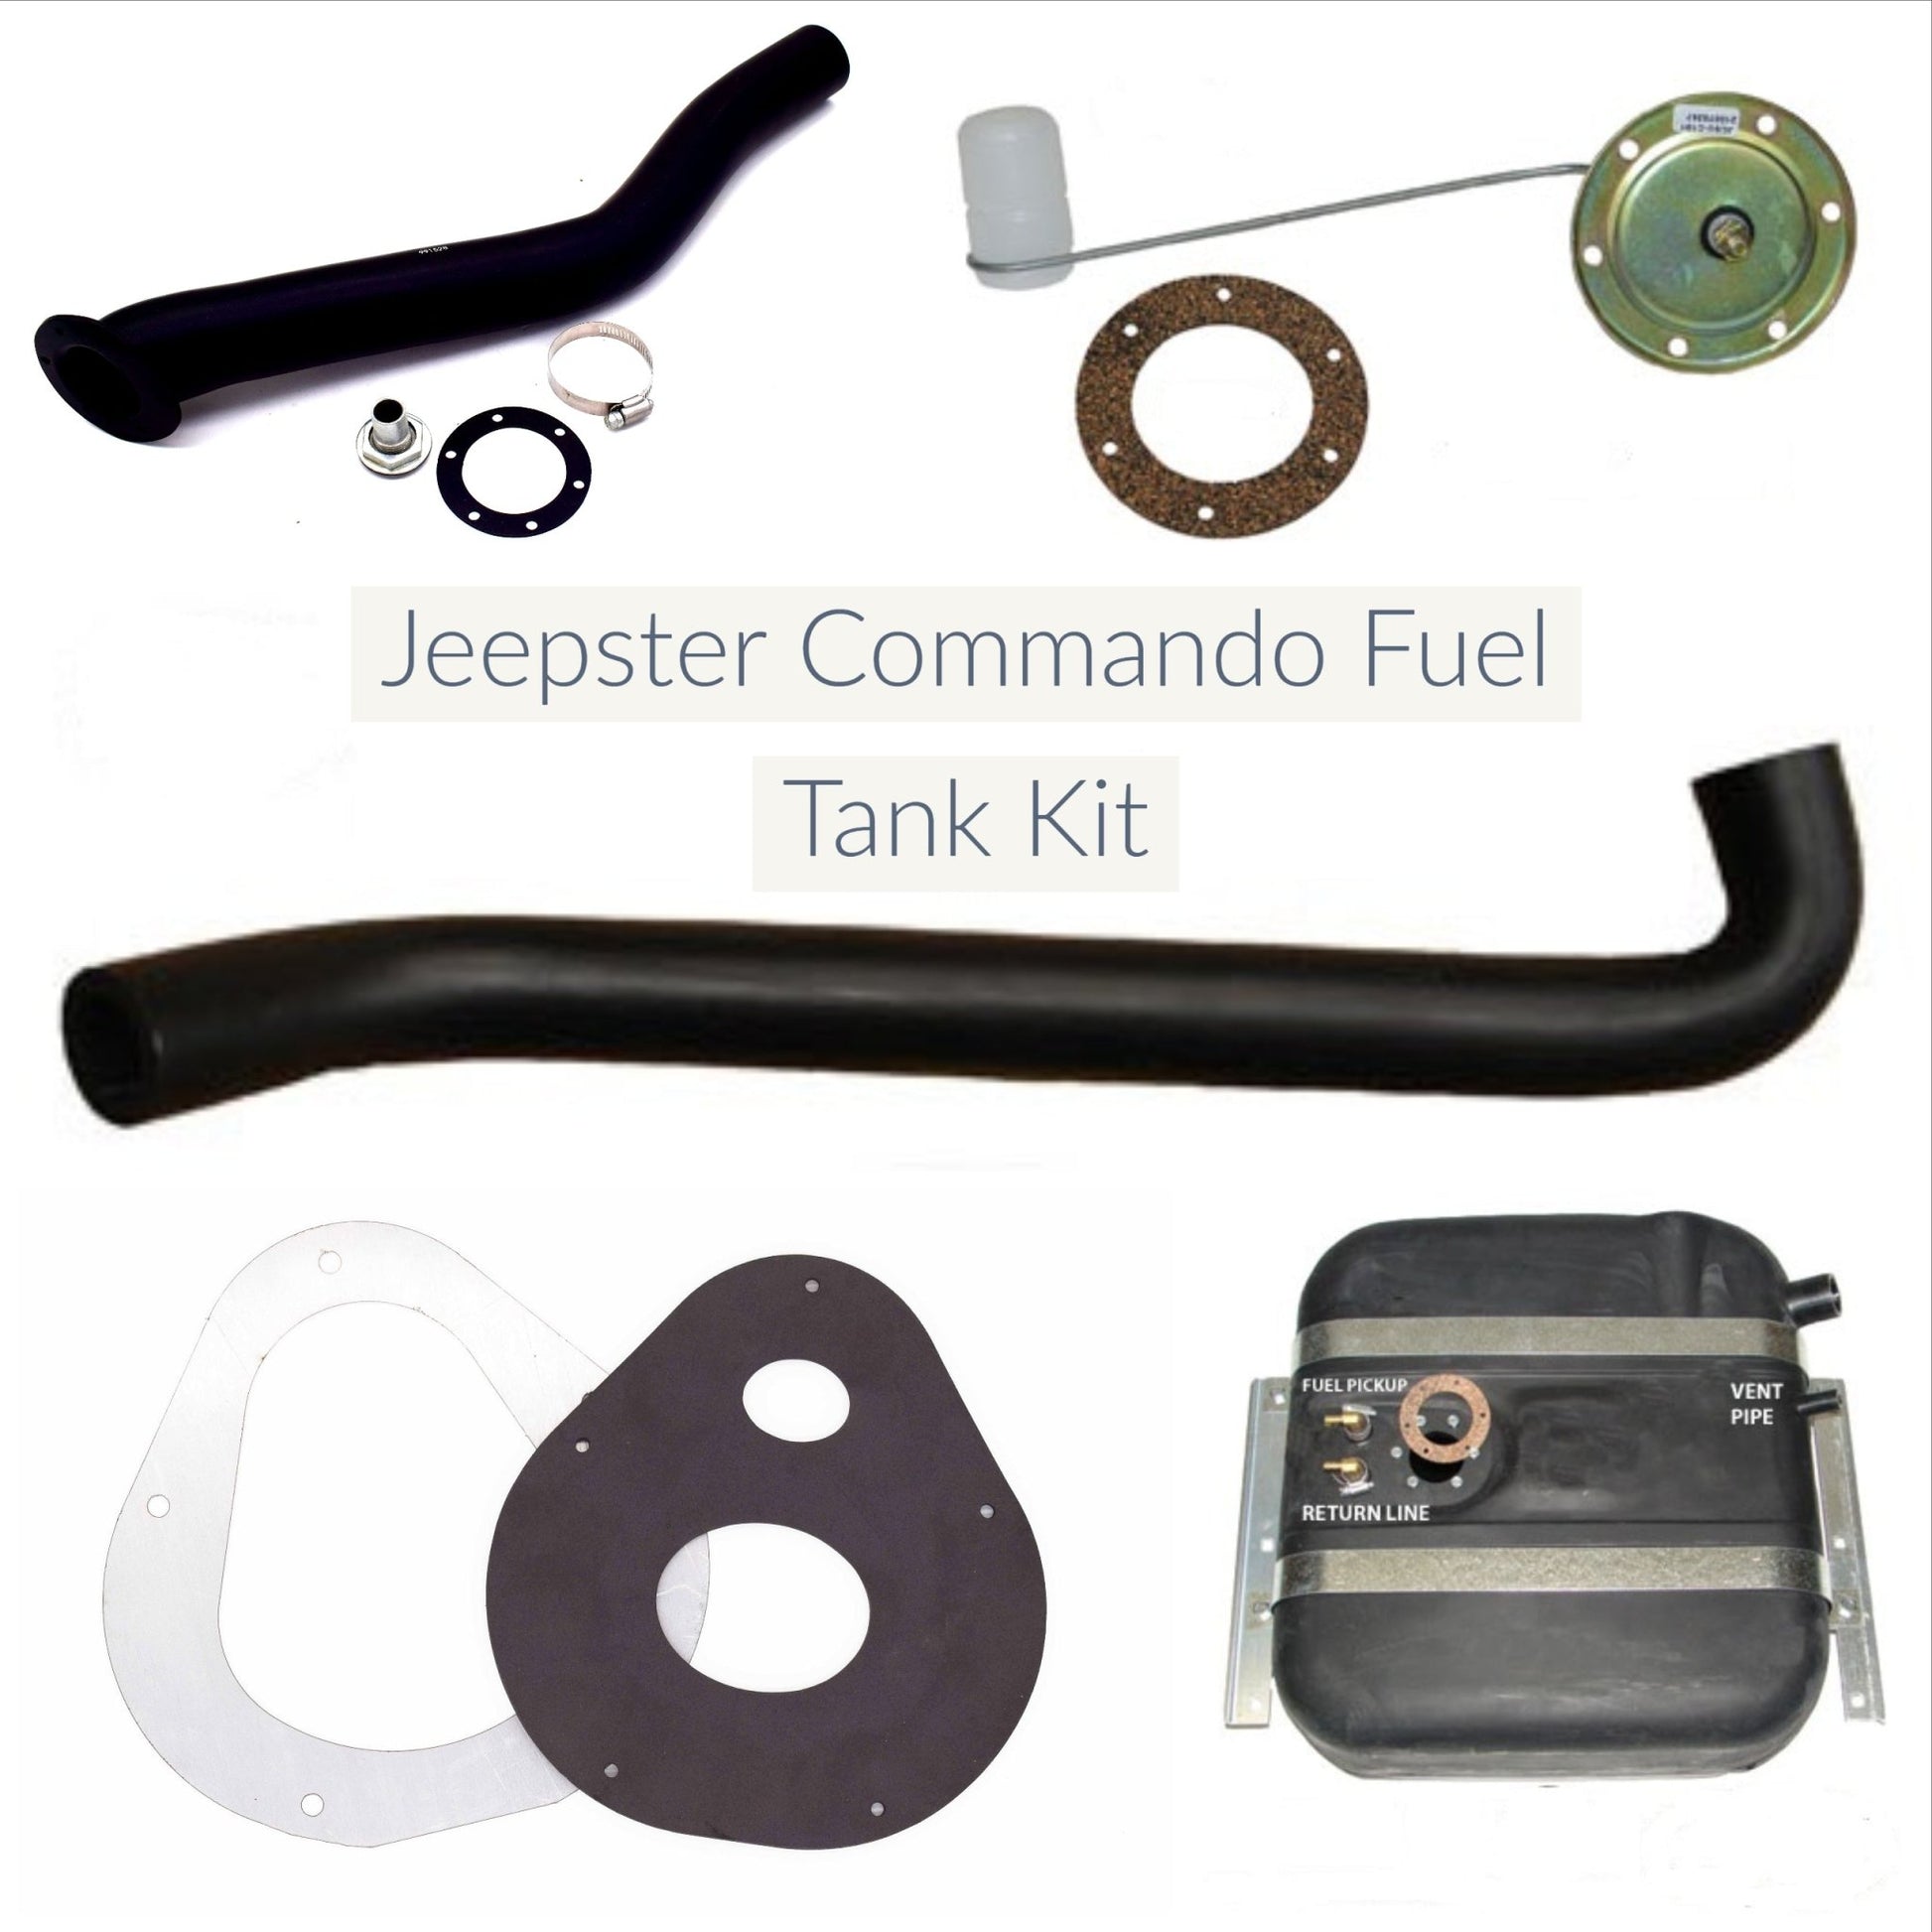 Jeepster Commando Fuel Tank, Side Fill Kit, 1967-1971 Jeepster Commando - The JeepsterMan